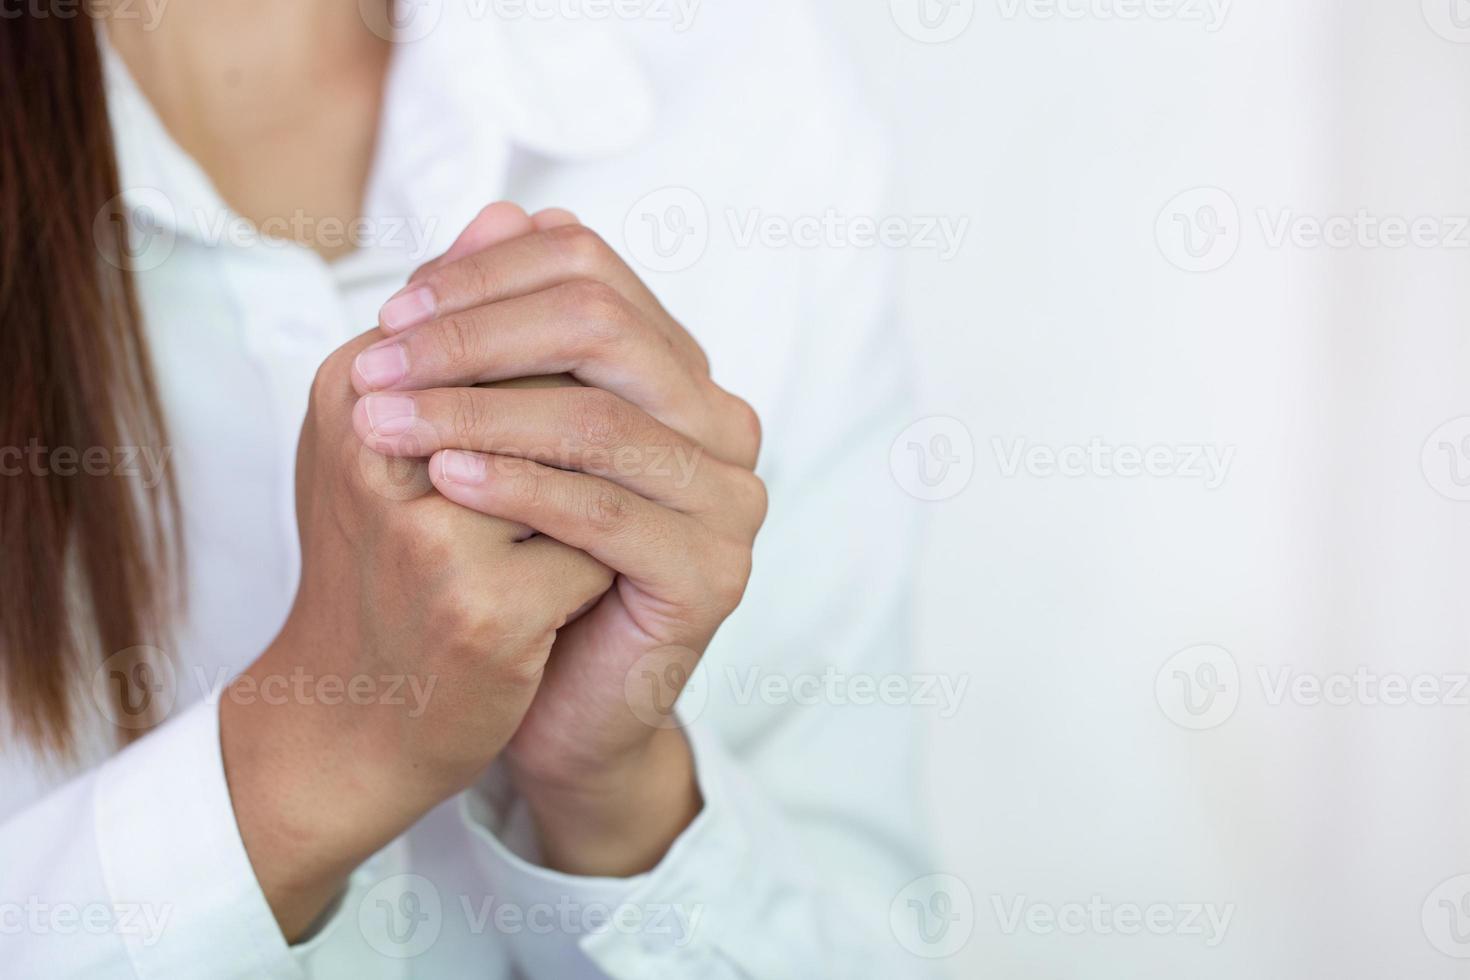 jonge vrouw die met de hand bidt, gebedsconcept voor geloof, spiritualiteit en religie foto